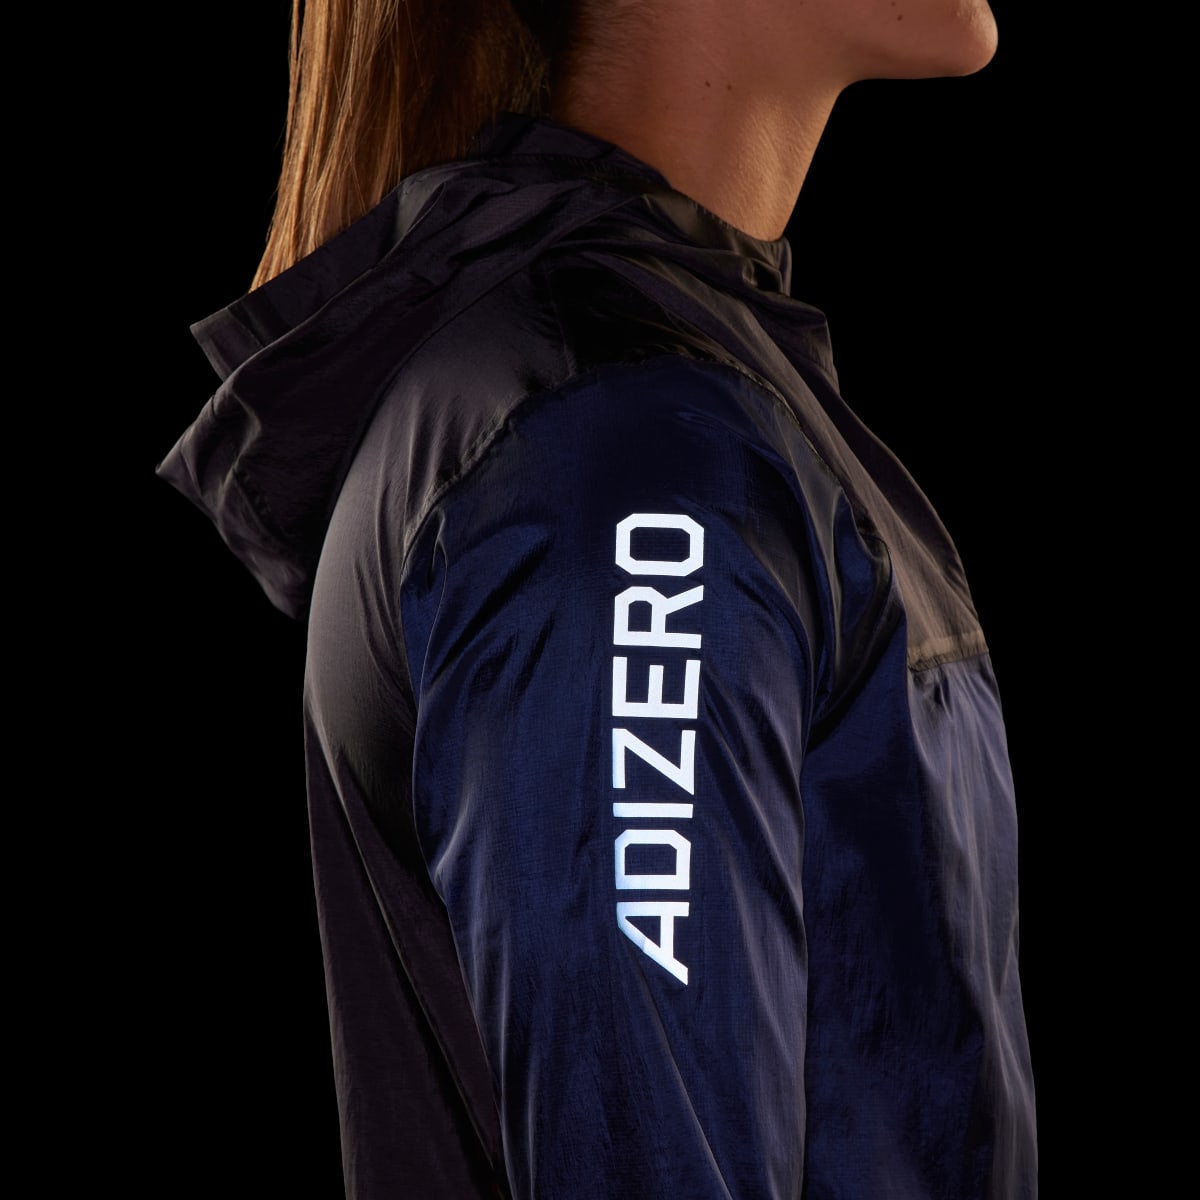 Adidas Adizero Running Lightweight Jacket. 7